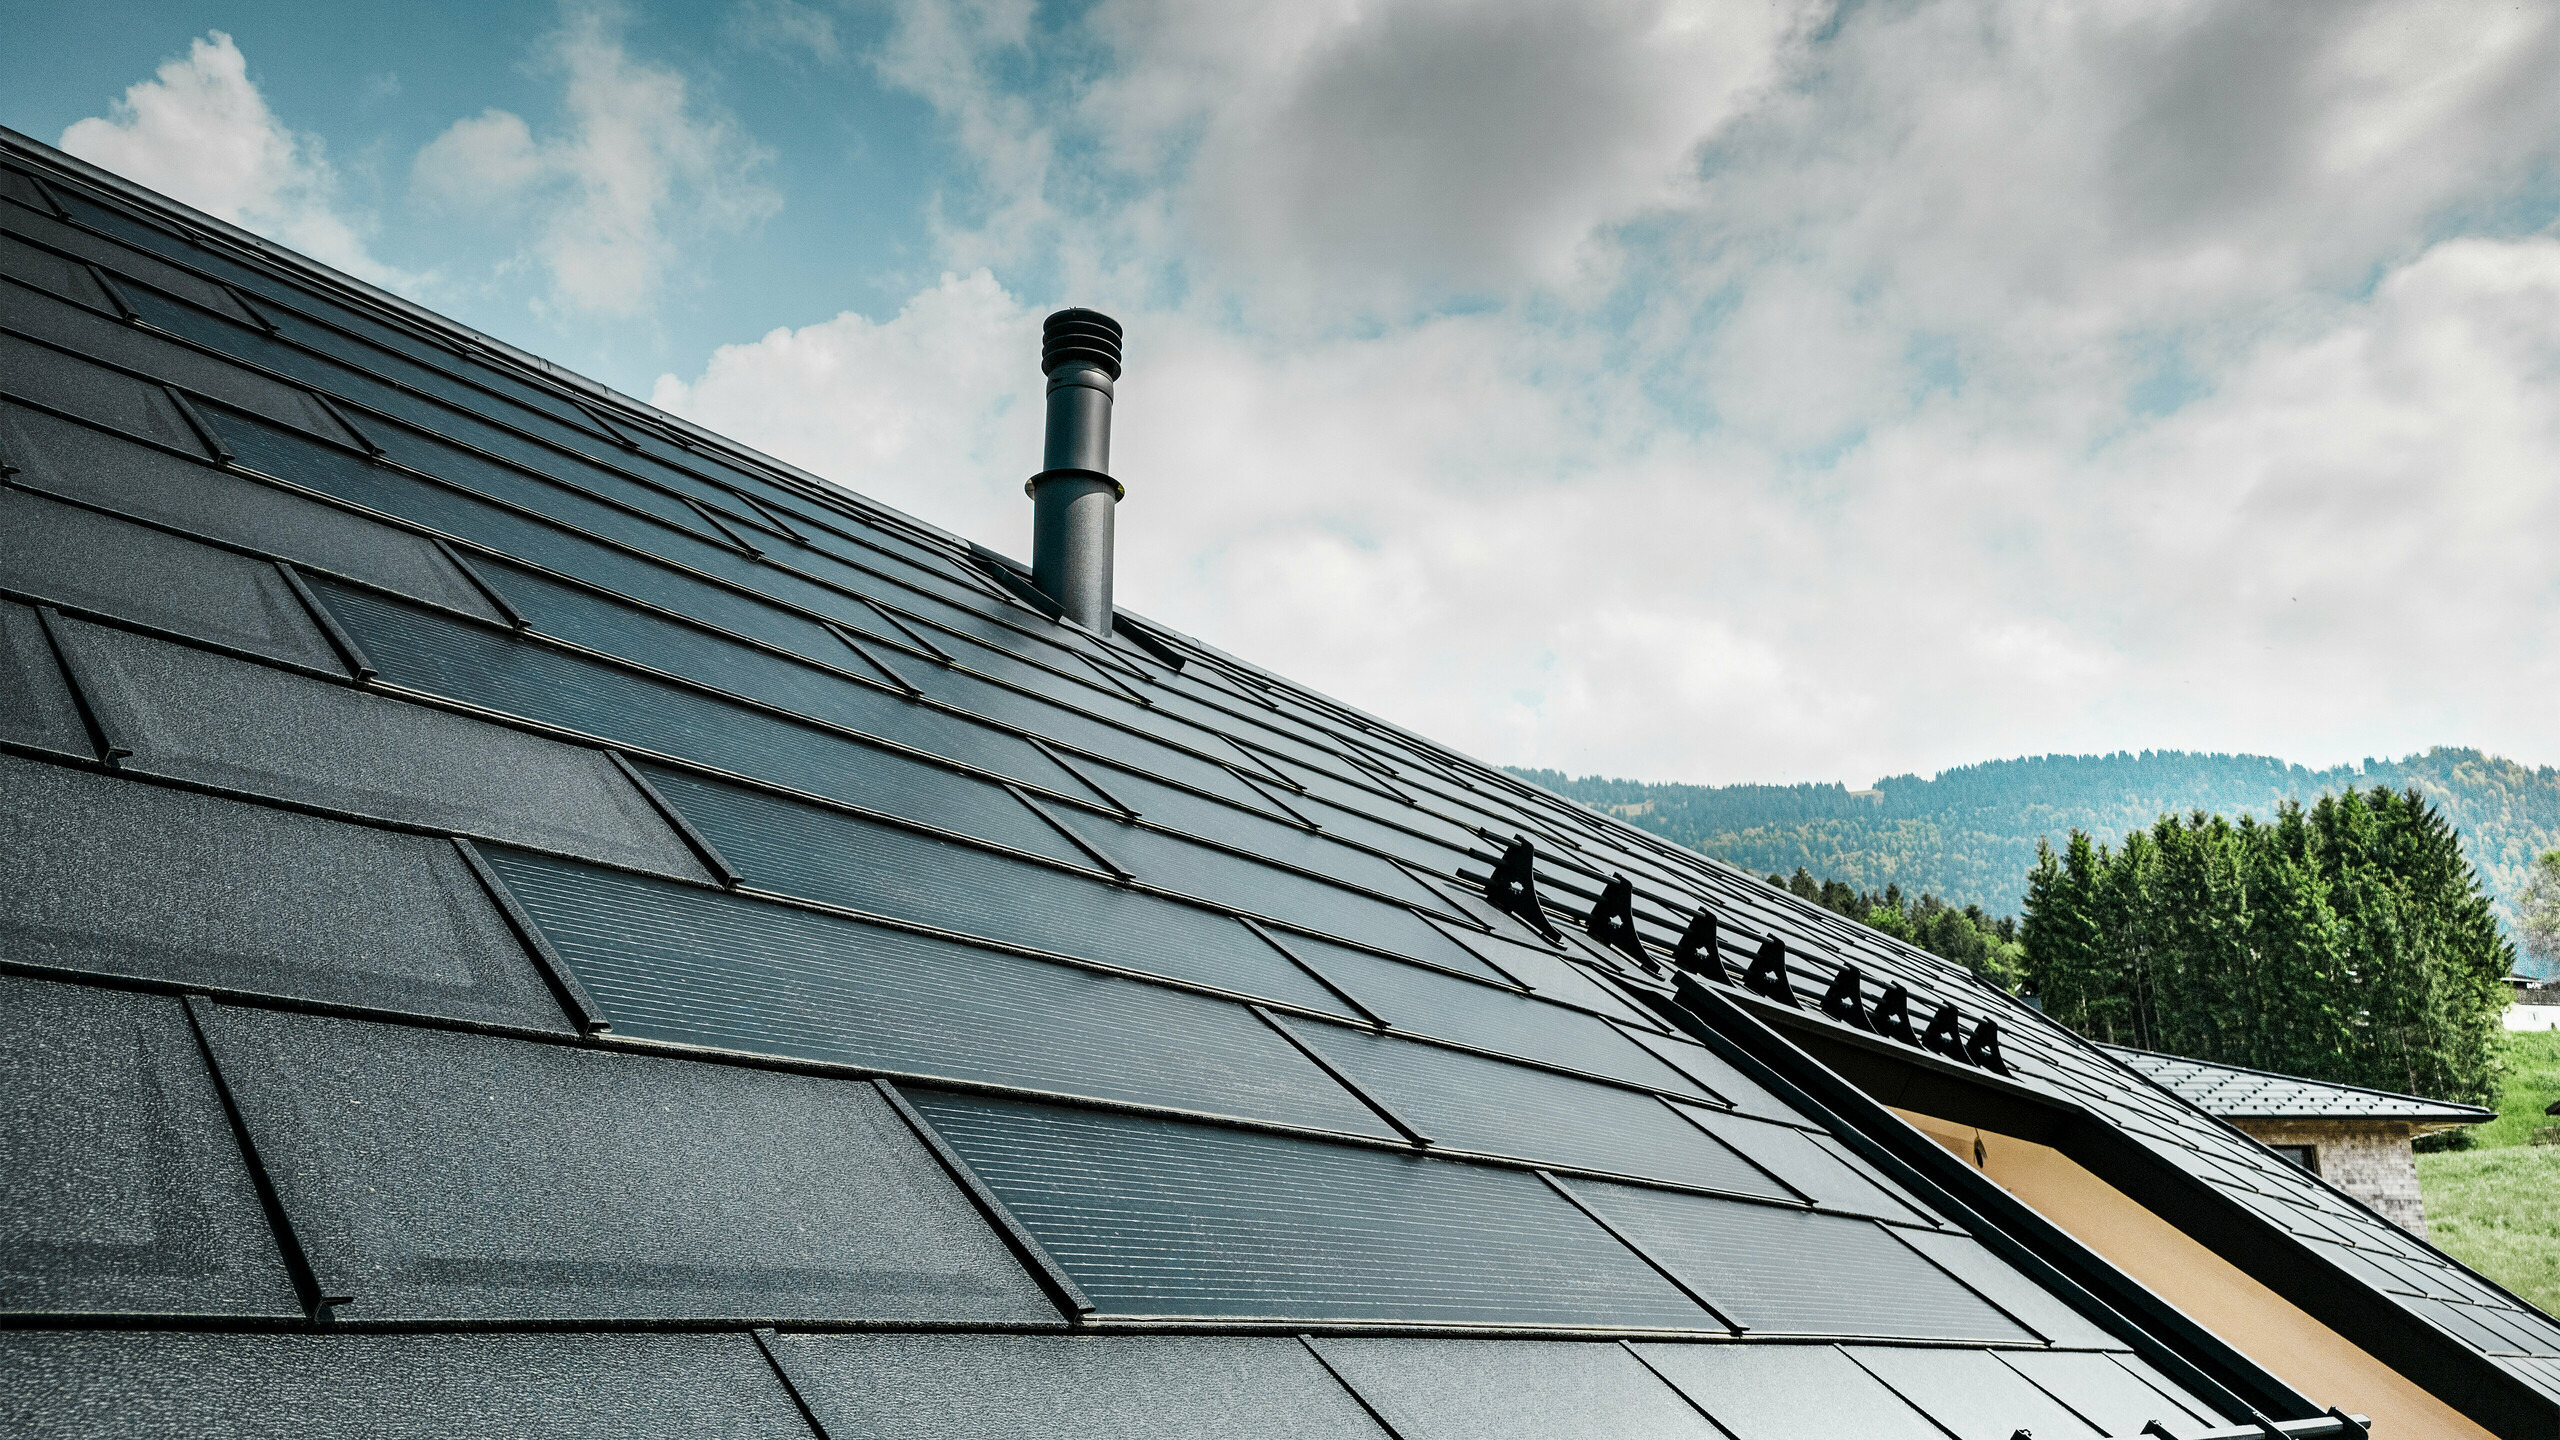 Detailansicht der PREFA Solardachplatte kombiniert mit der bewährten PREFA Dachplatte R.16 in der Farbe P.10 Schwarz auf einem Ökohaus in Egg, Österreich. Die integrierten Photovoltaikmodule zeigen die nahtlose Verbindung von erneuerbarer Energie und anspruchsvollem Dachdesign. Die schwarzen Dachplatten R.16 mit dem Schneeschutzsystem runden die ästhetische Dachoberfläche ab sorgen zudem für Sicherheit.